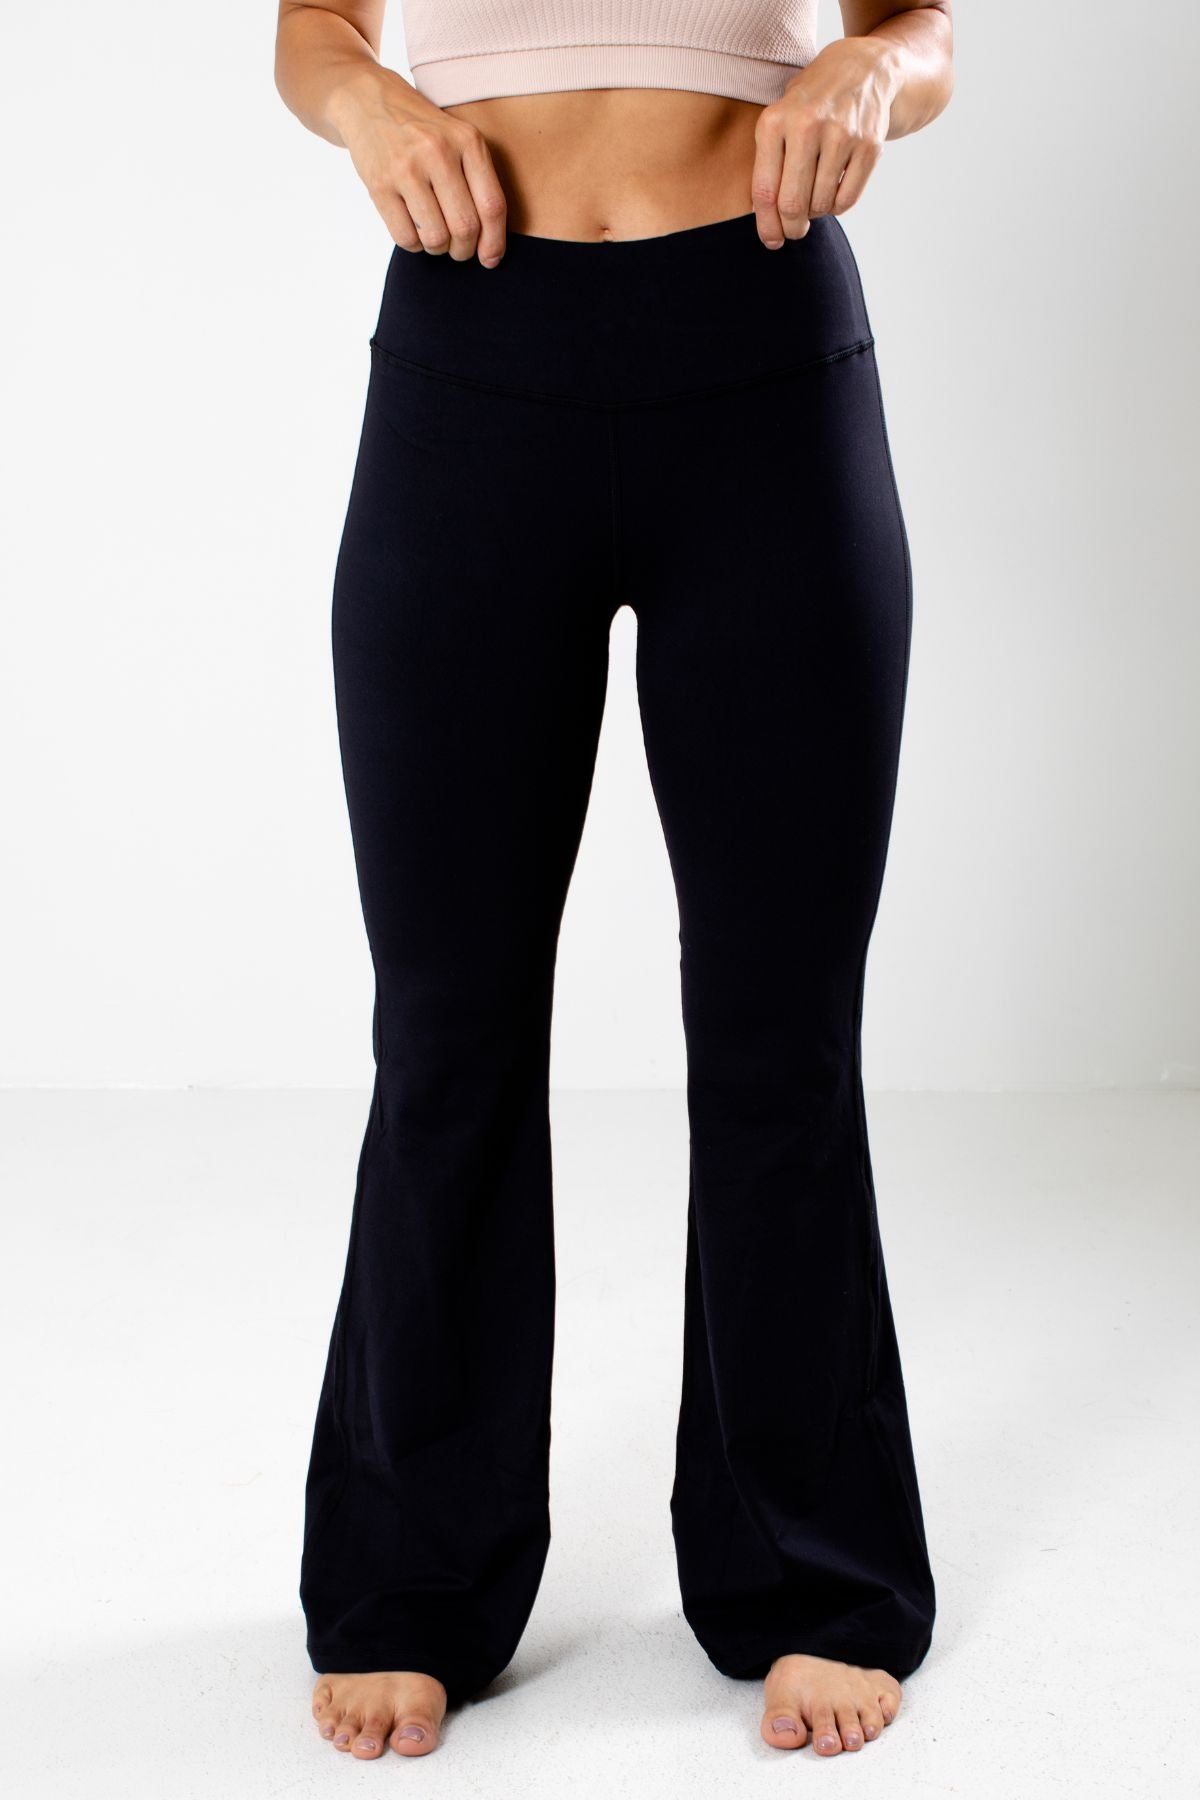 Women's Black Flare Style Boutique Yoga Pants